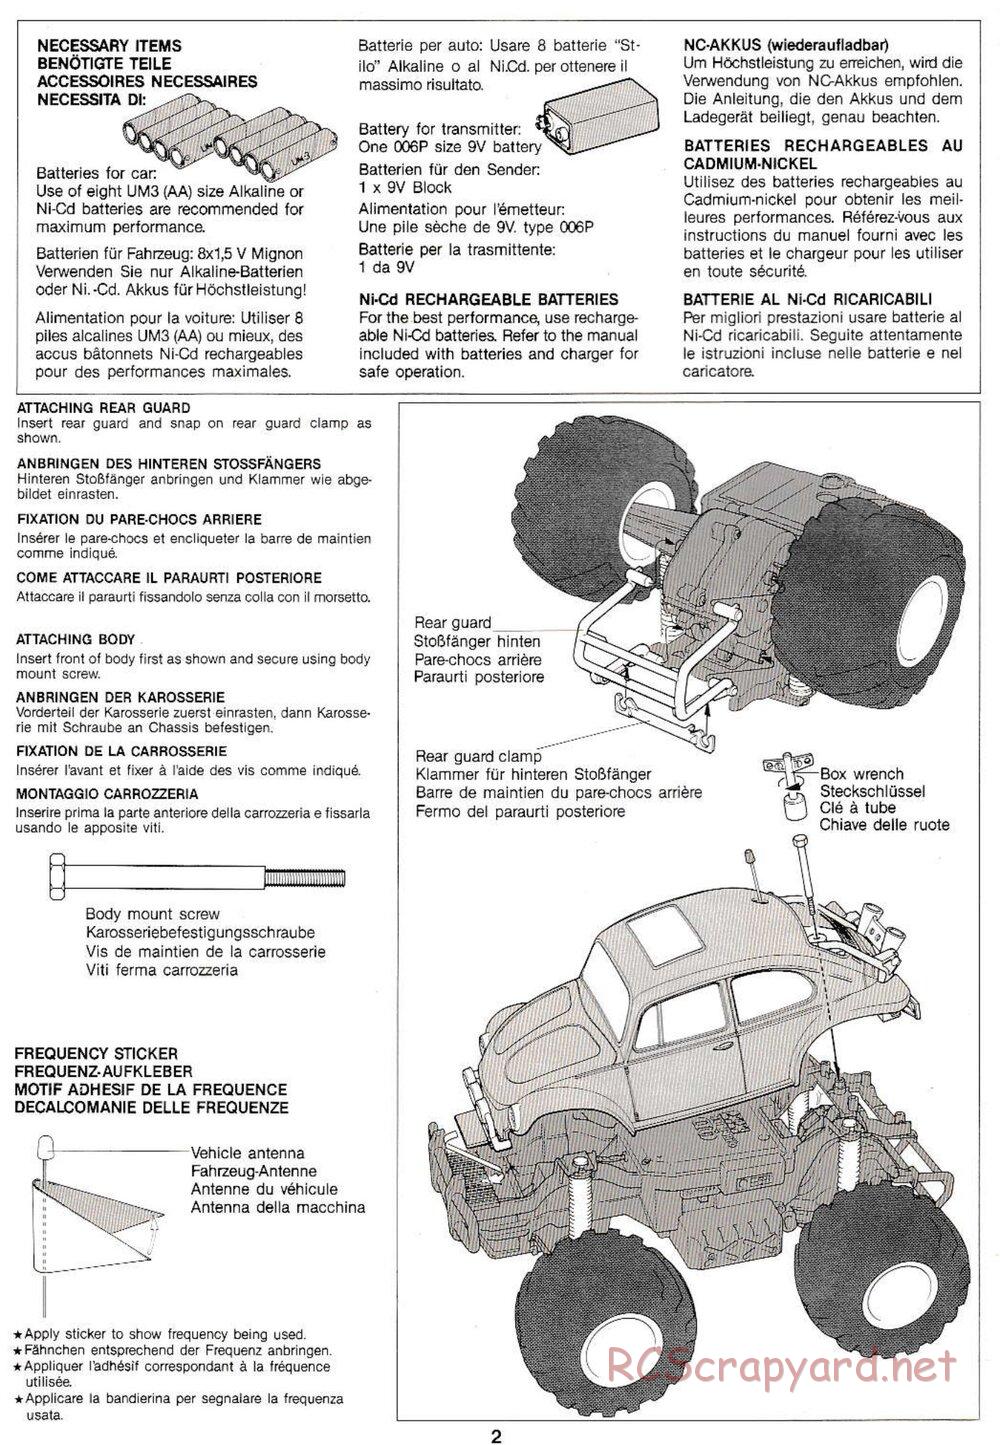 Tamiya - Monster Beetle QD Chassis - Manual - Page 2